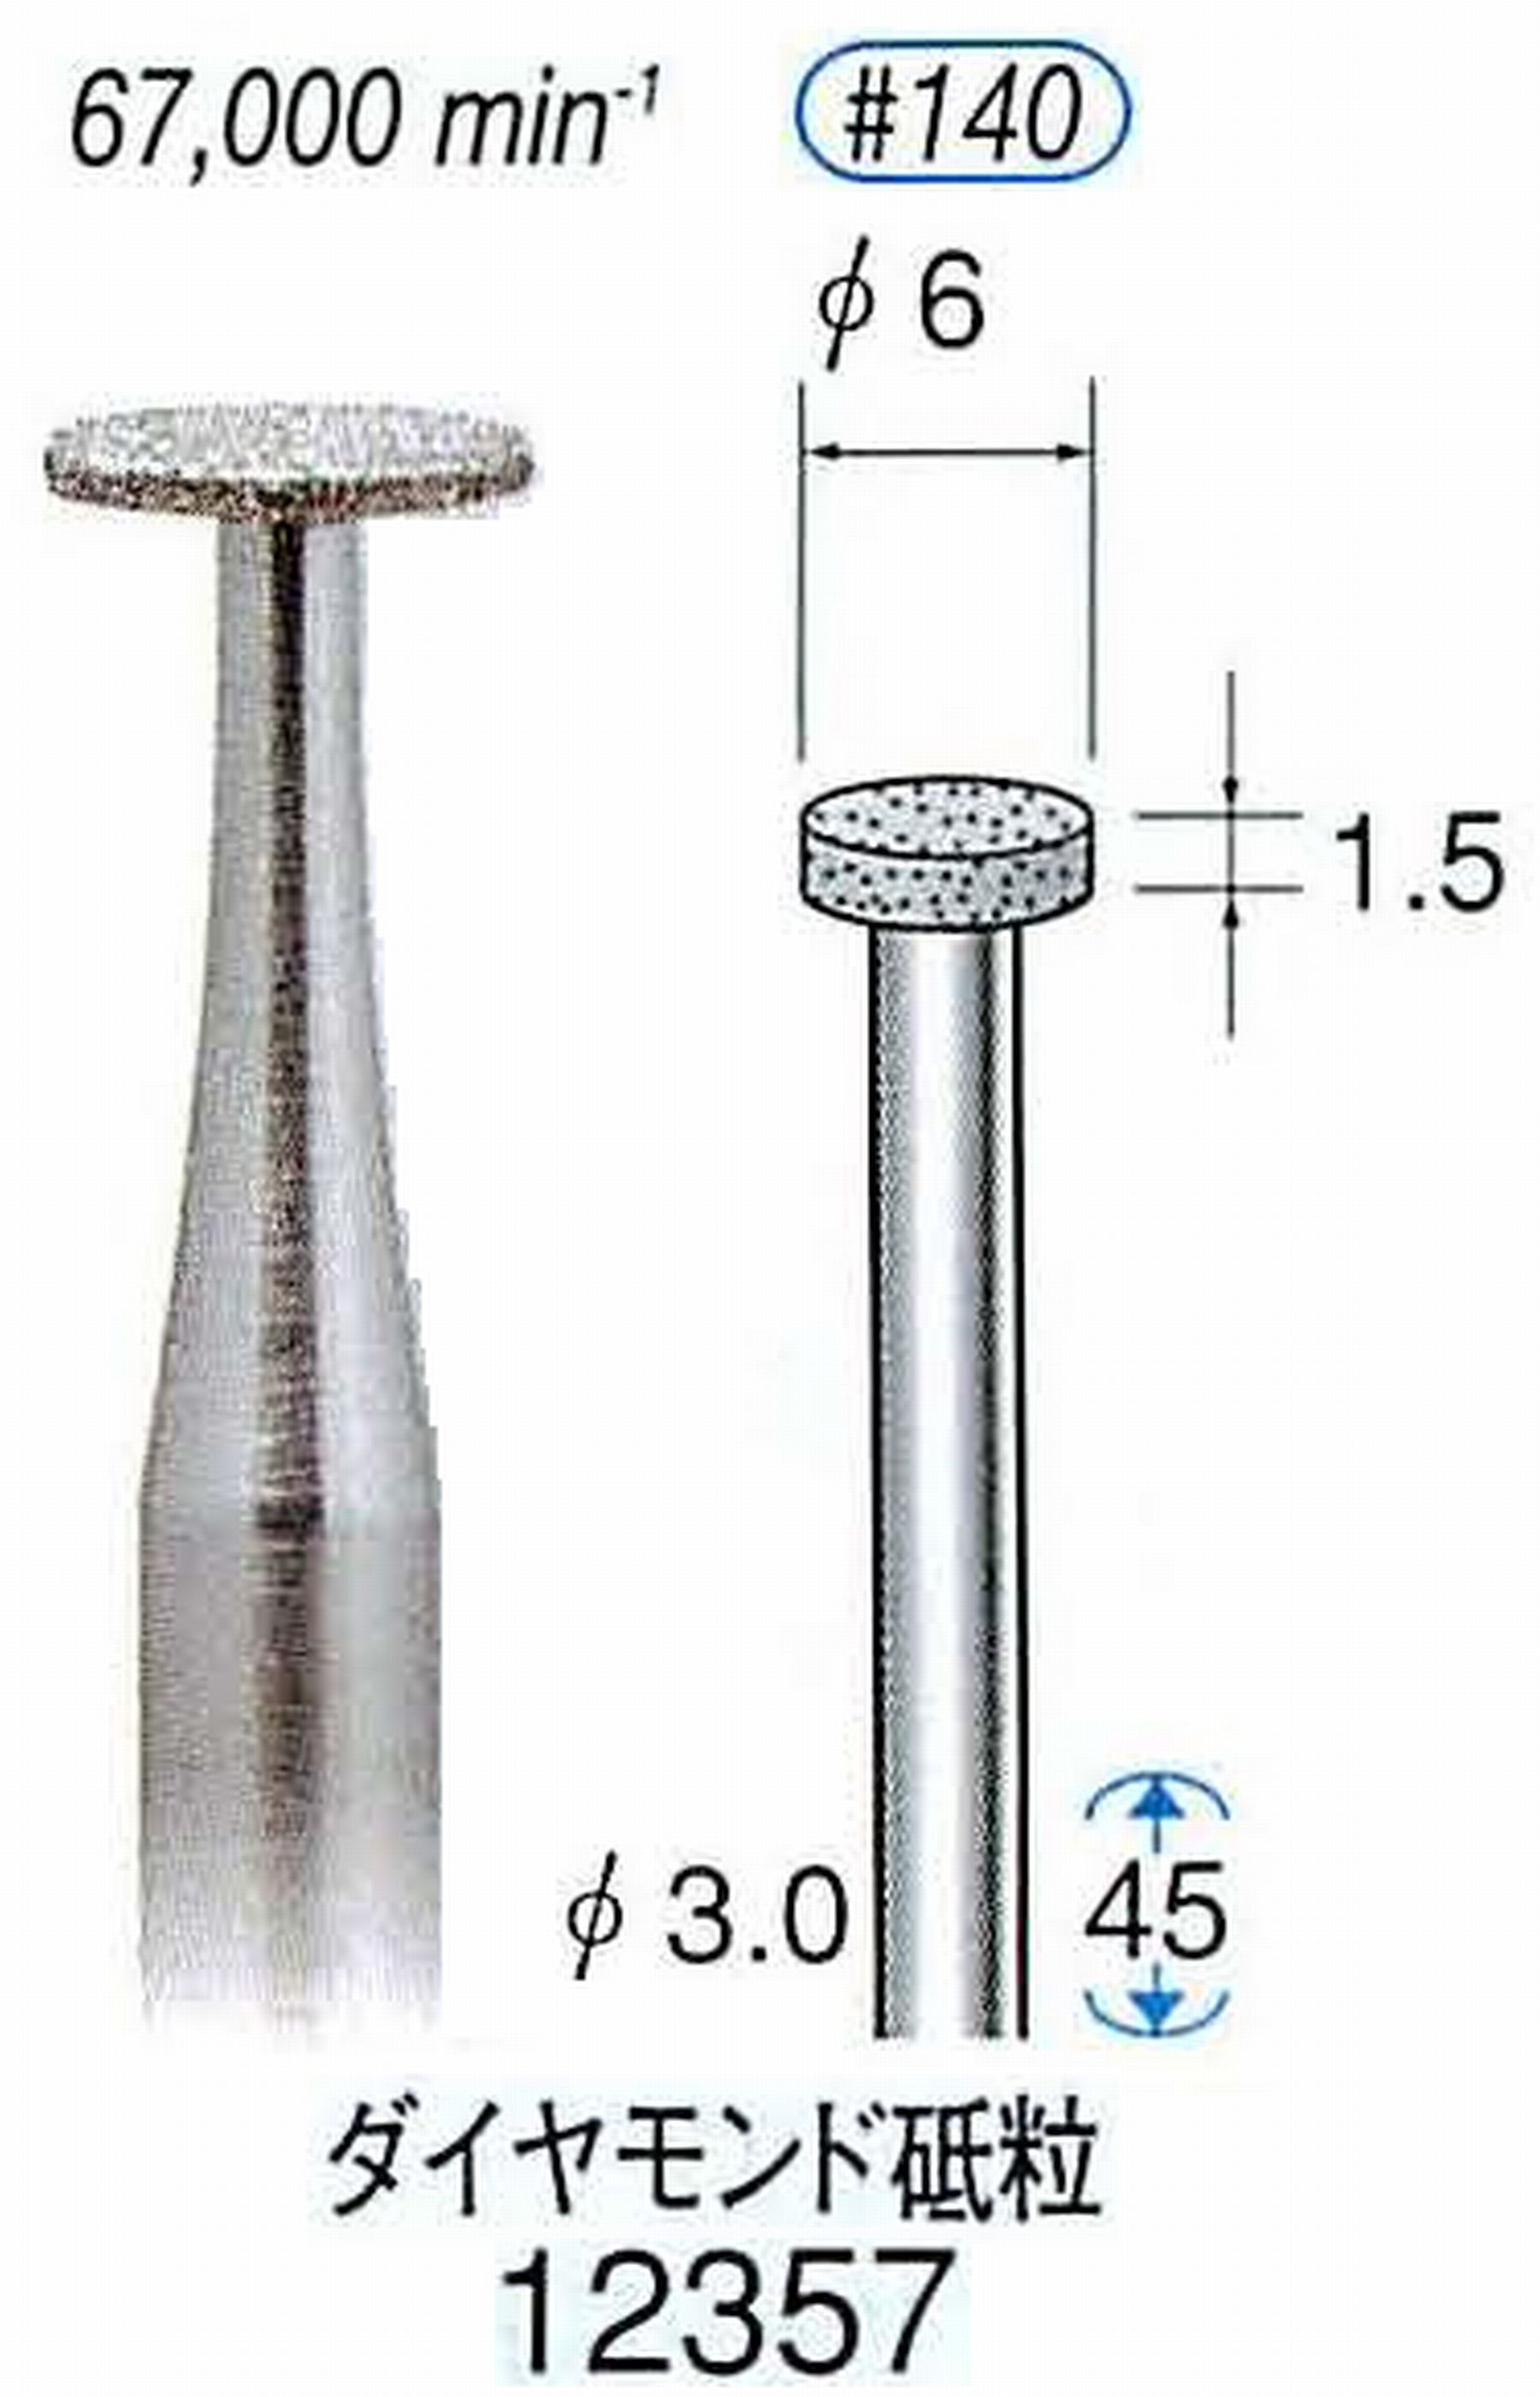 ナカニシ/NAKANISHI 電着ダイヤモンド ダイヤモンド砥粒 軸径(シャンク)φ3.0mm 12357